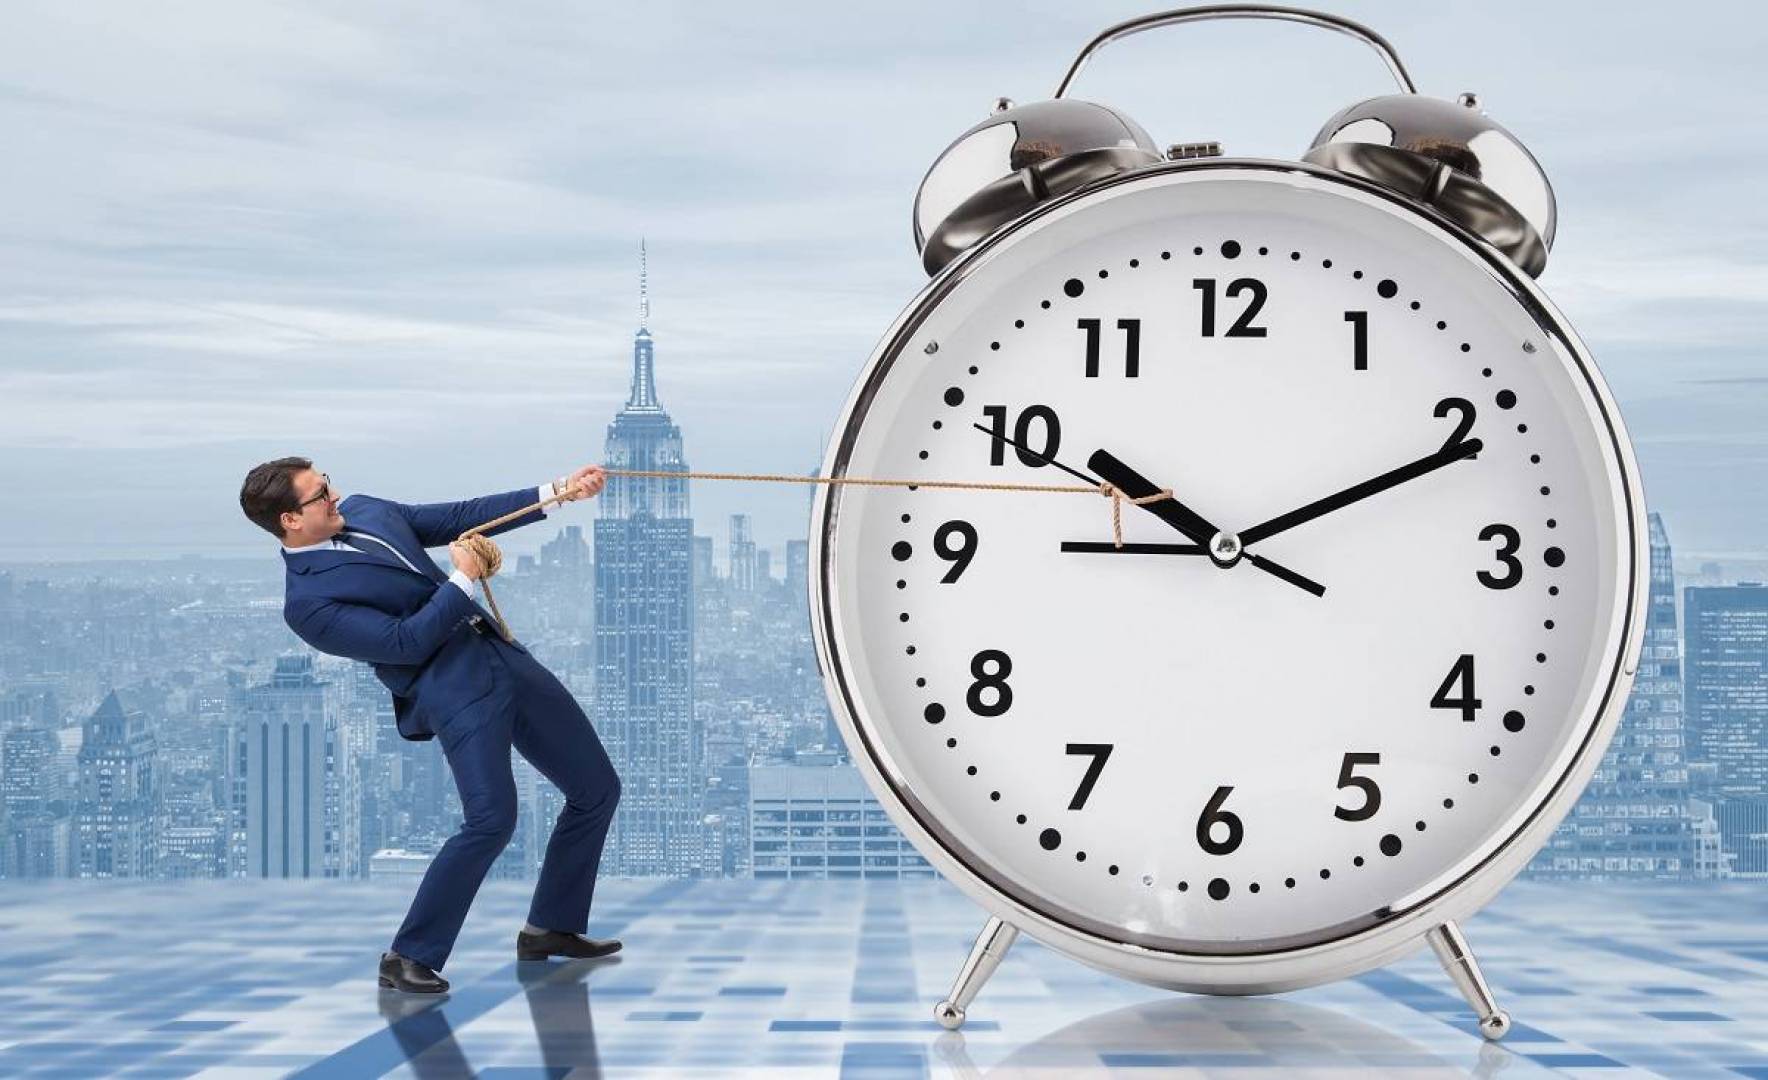 أهمية تنظيم الوقت وأسباب عدم التنظيم والنتائج المترتبة عليها